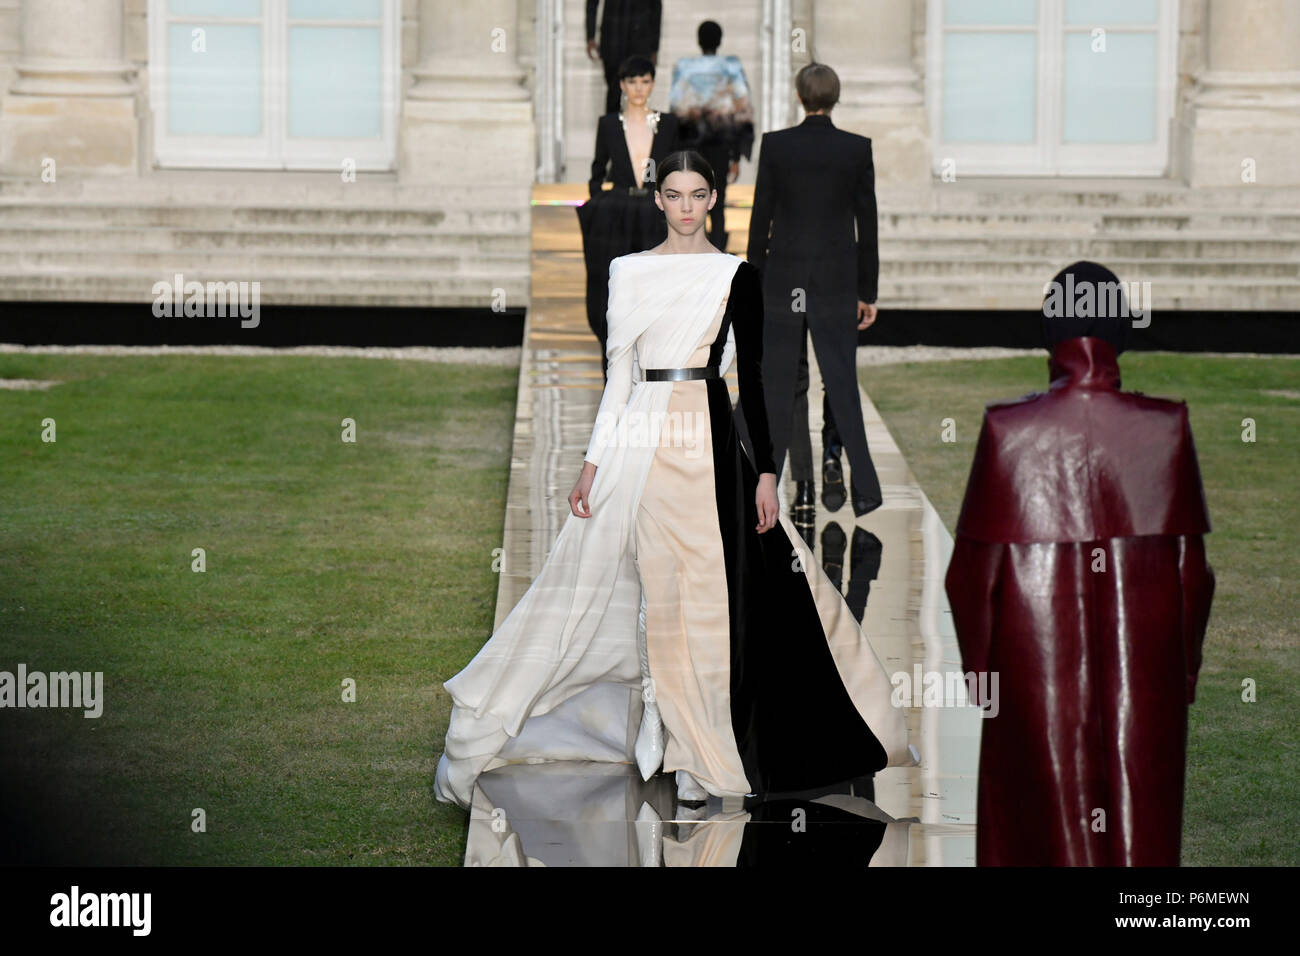 París, Francia. El 1 de julio, 2018. Modelos presentan las creaciones de Givenchy Haute Couture durante el otoño/invierno 2018/19 desfiles de moda en París, Francia, el 1 de julio de 2018. Crédito: Piero Biasion/Xinhua/Alamy Live News Foto de stock